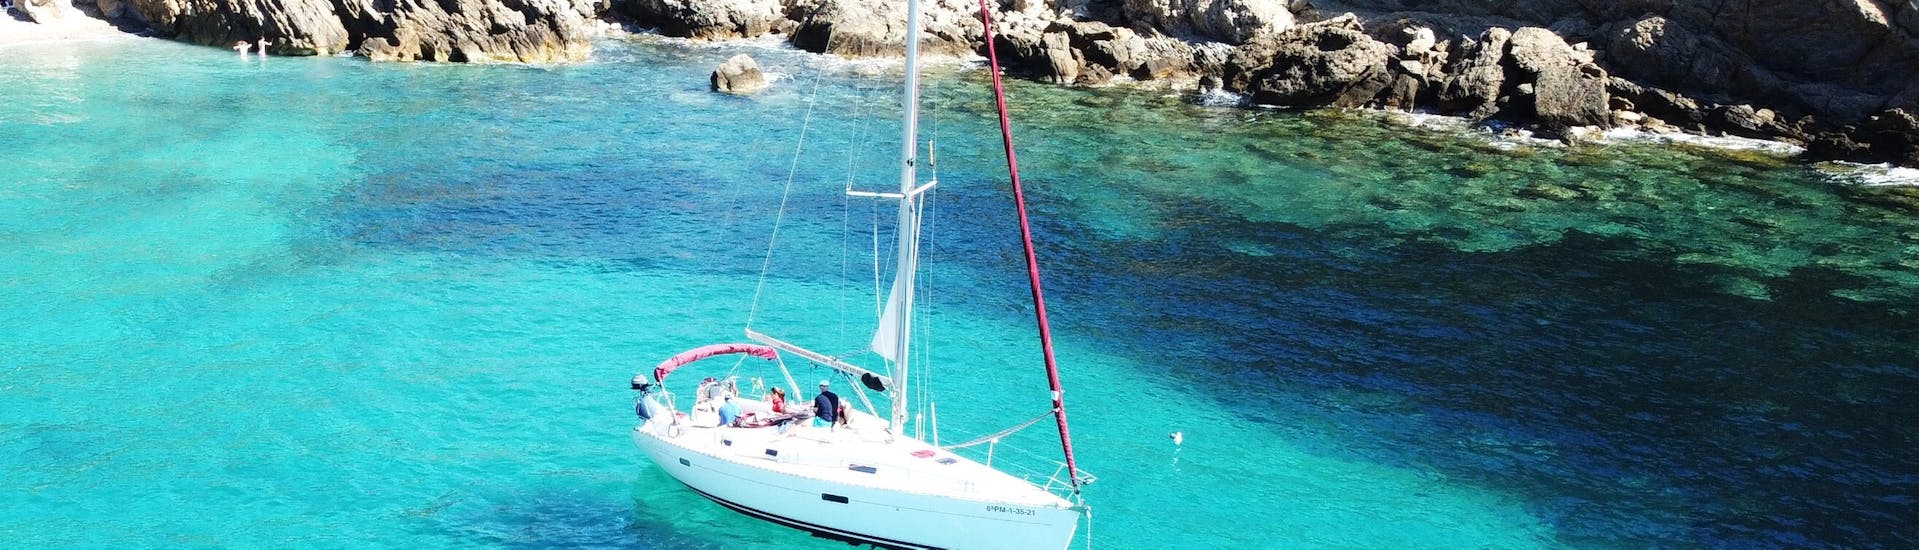 Notre bateau navigue sur l'eau pendant l'excursion privée d'une journée en bateau à Majorque depuis Port d'Andratx avec Pura Vida Sailing Mallorca.